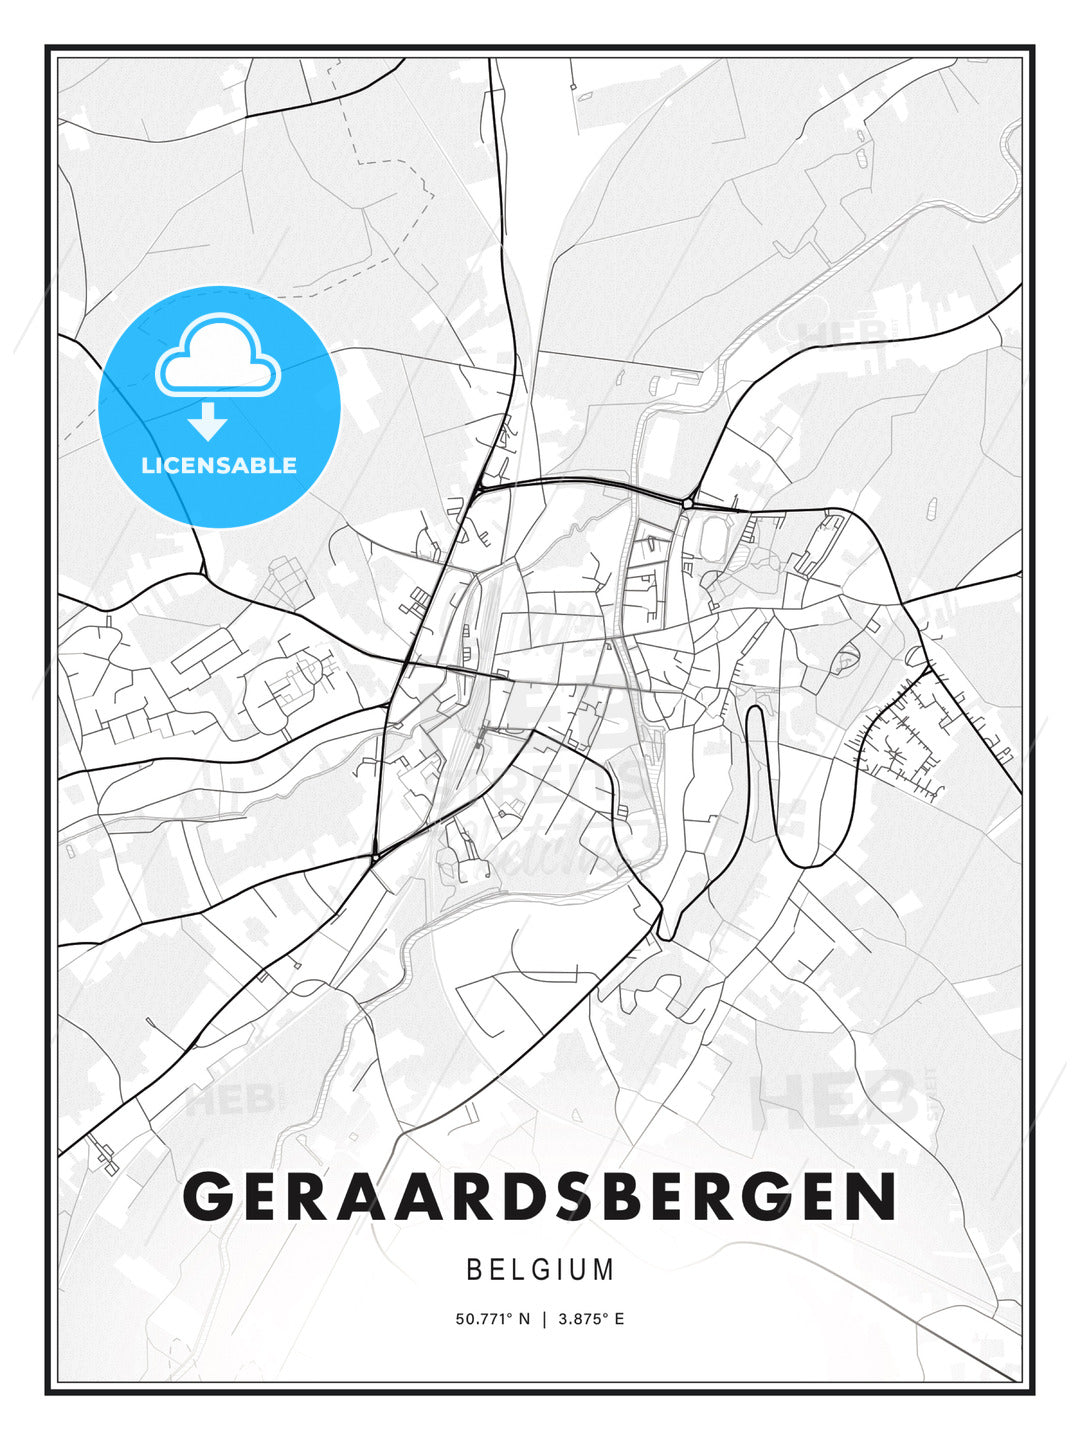 Geraardsbergen, Belgium, Modern Print Template in Various Formats - HEBSTREITS Sketches